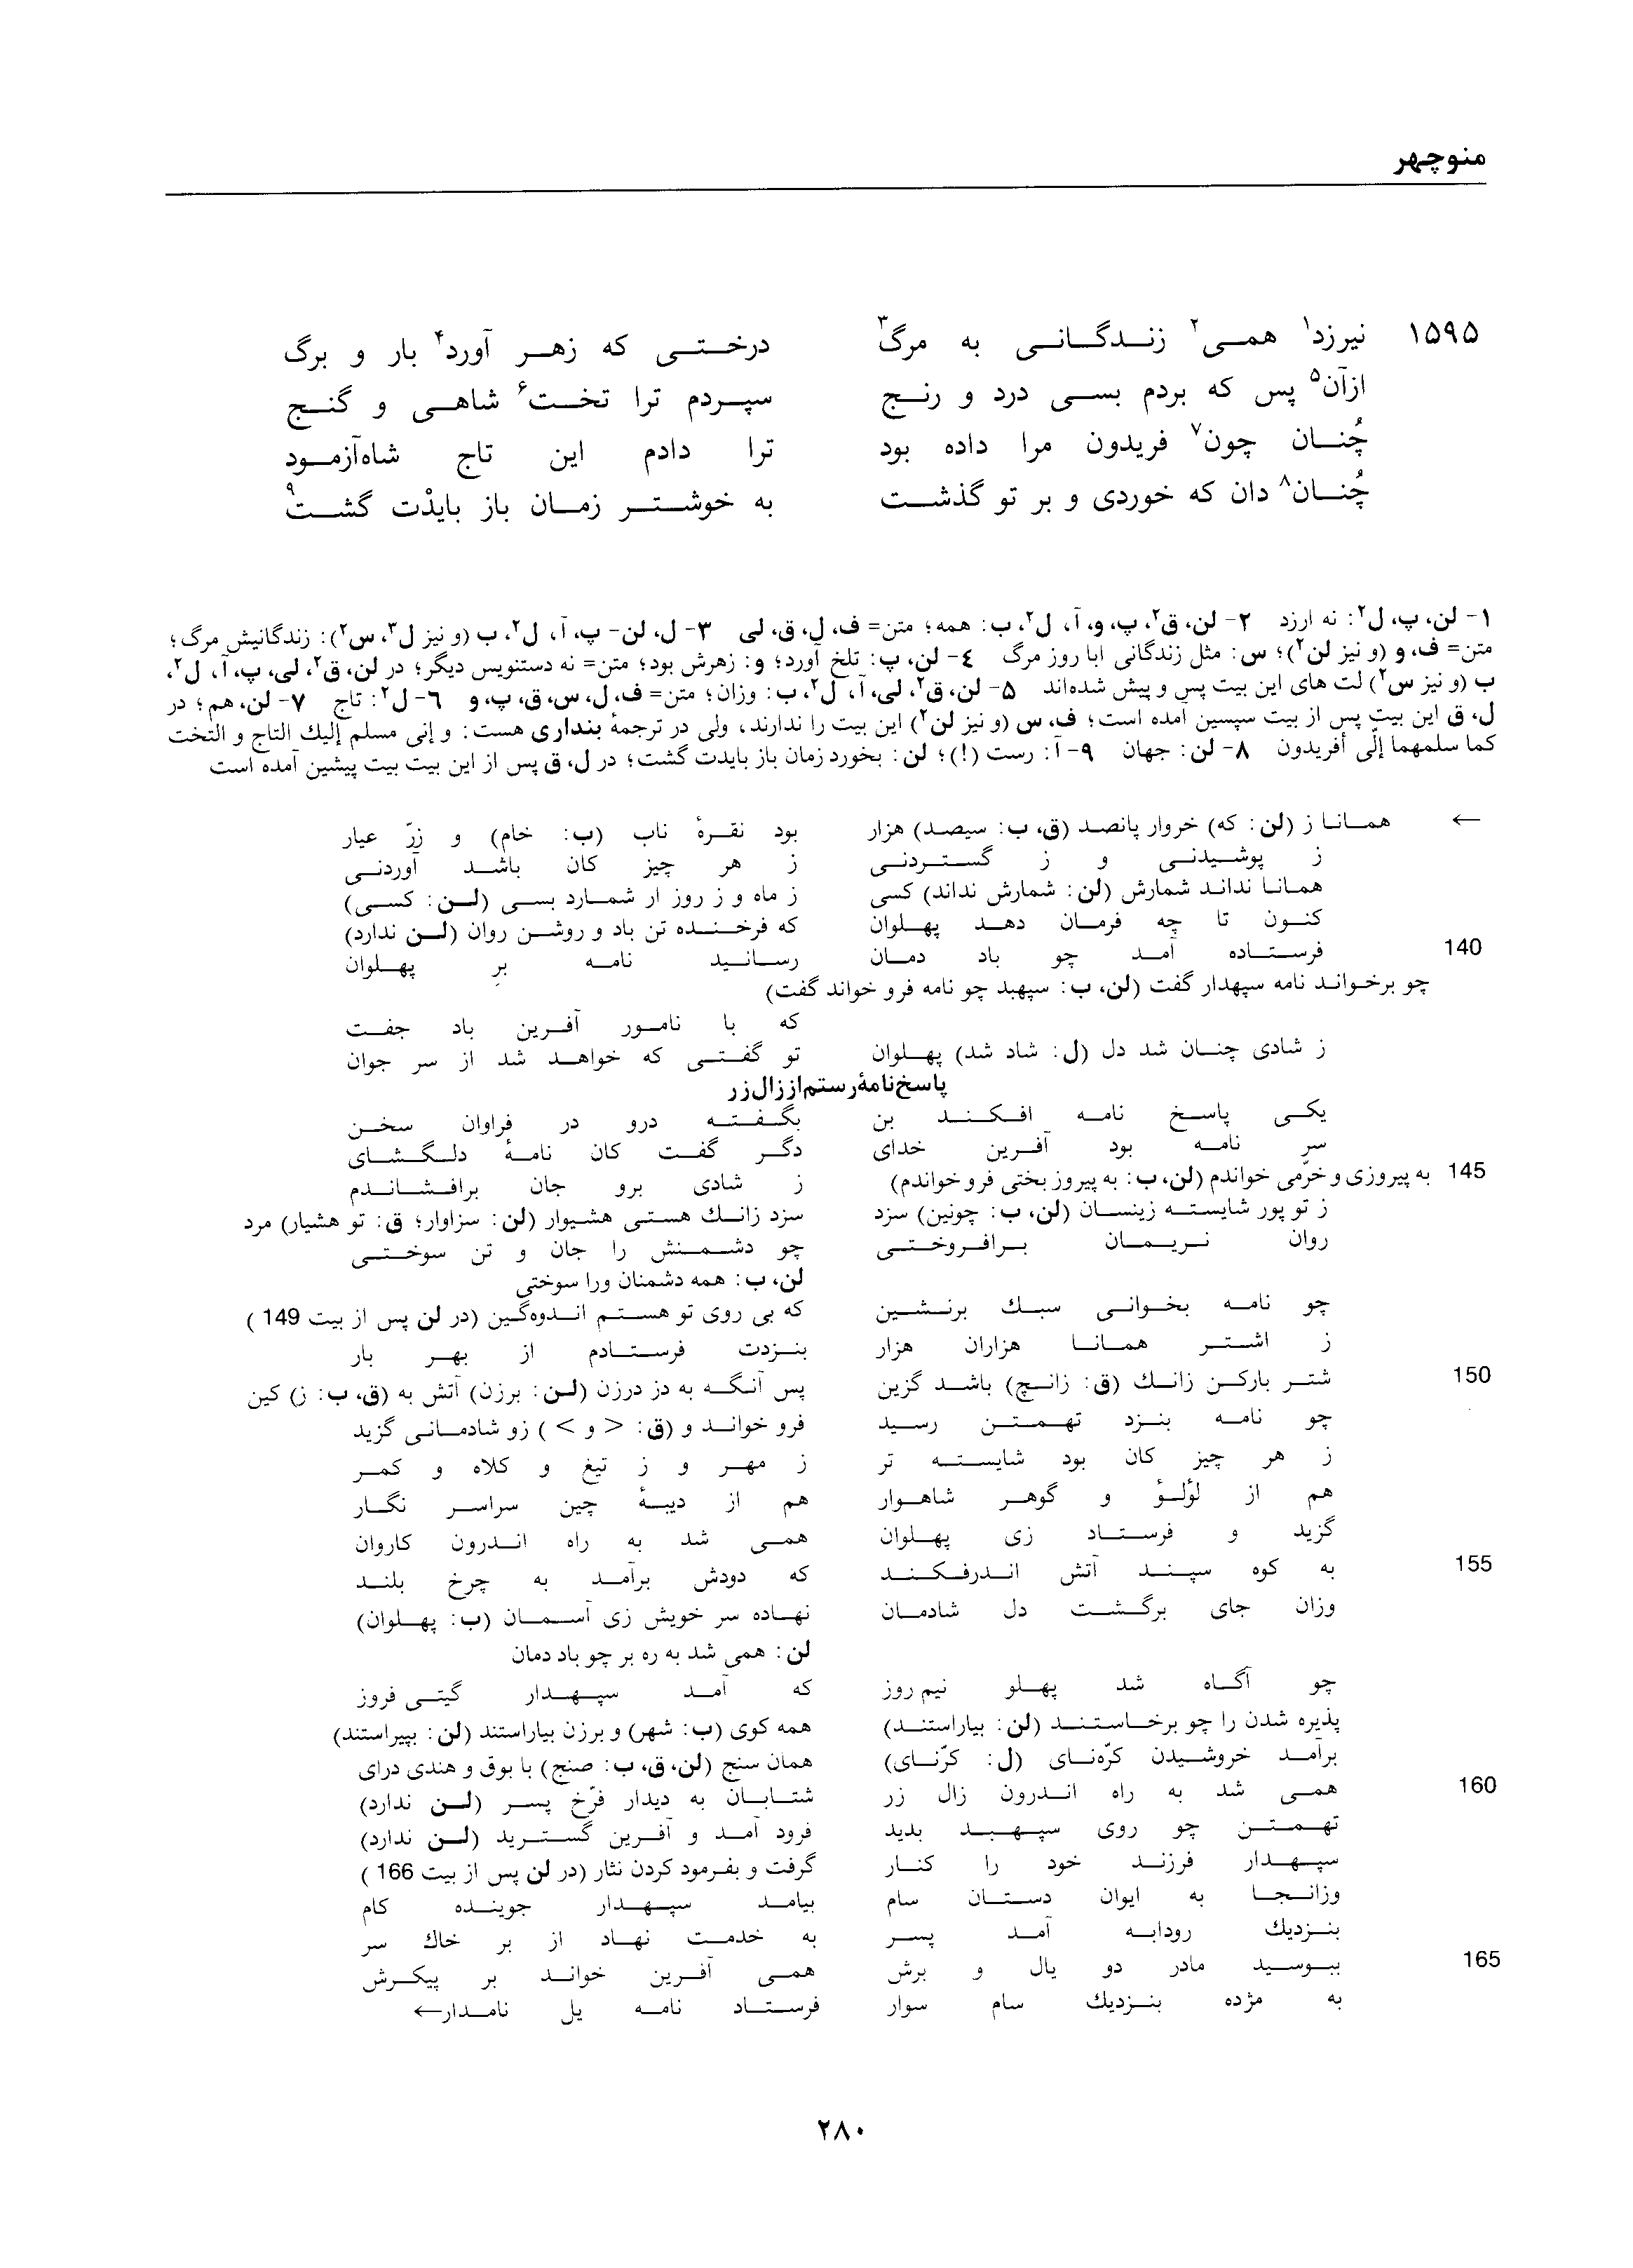 vol. 1, p. 280